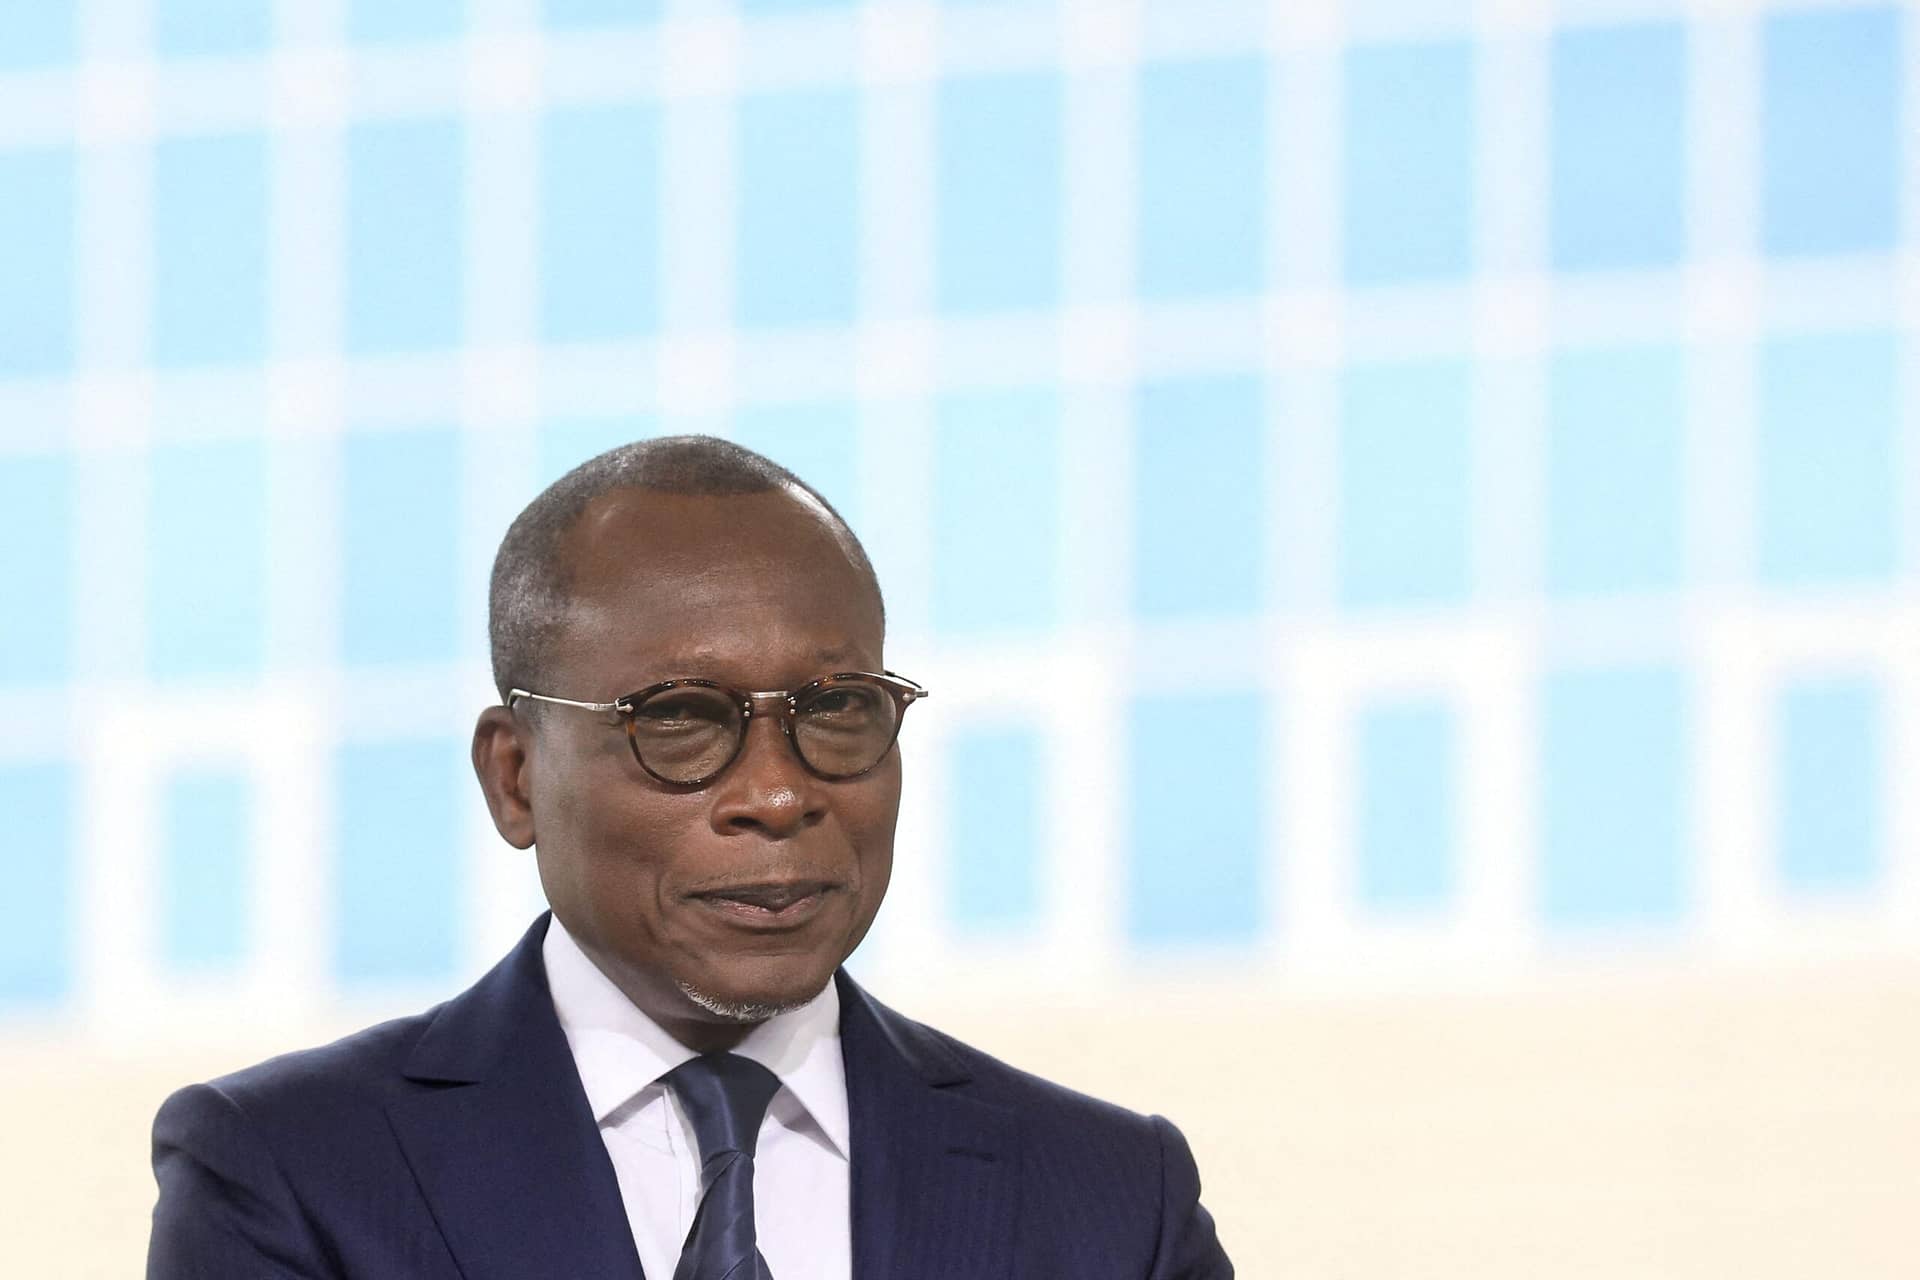 Le président du Bénin confronte les milieux d’affaires français alors que les problèmes des droits de l’homme se développent – London Business News